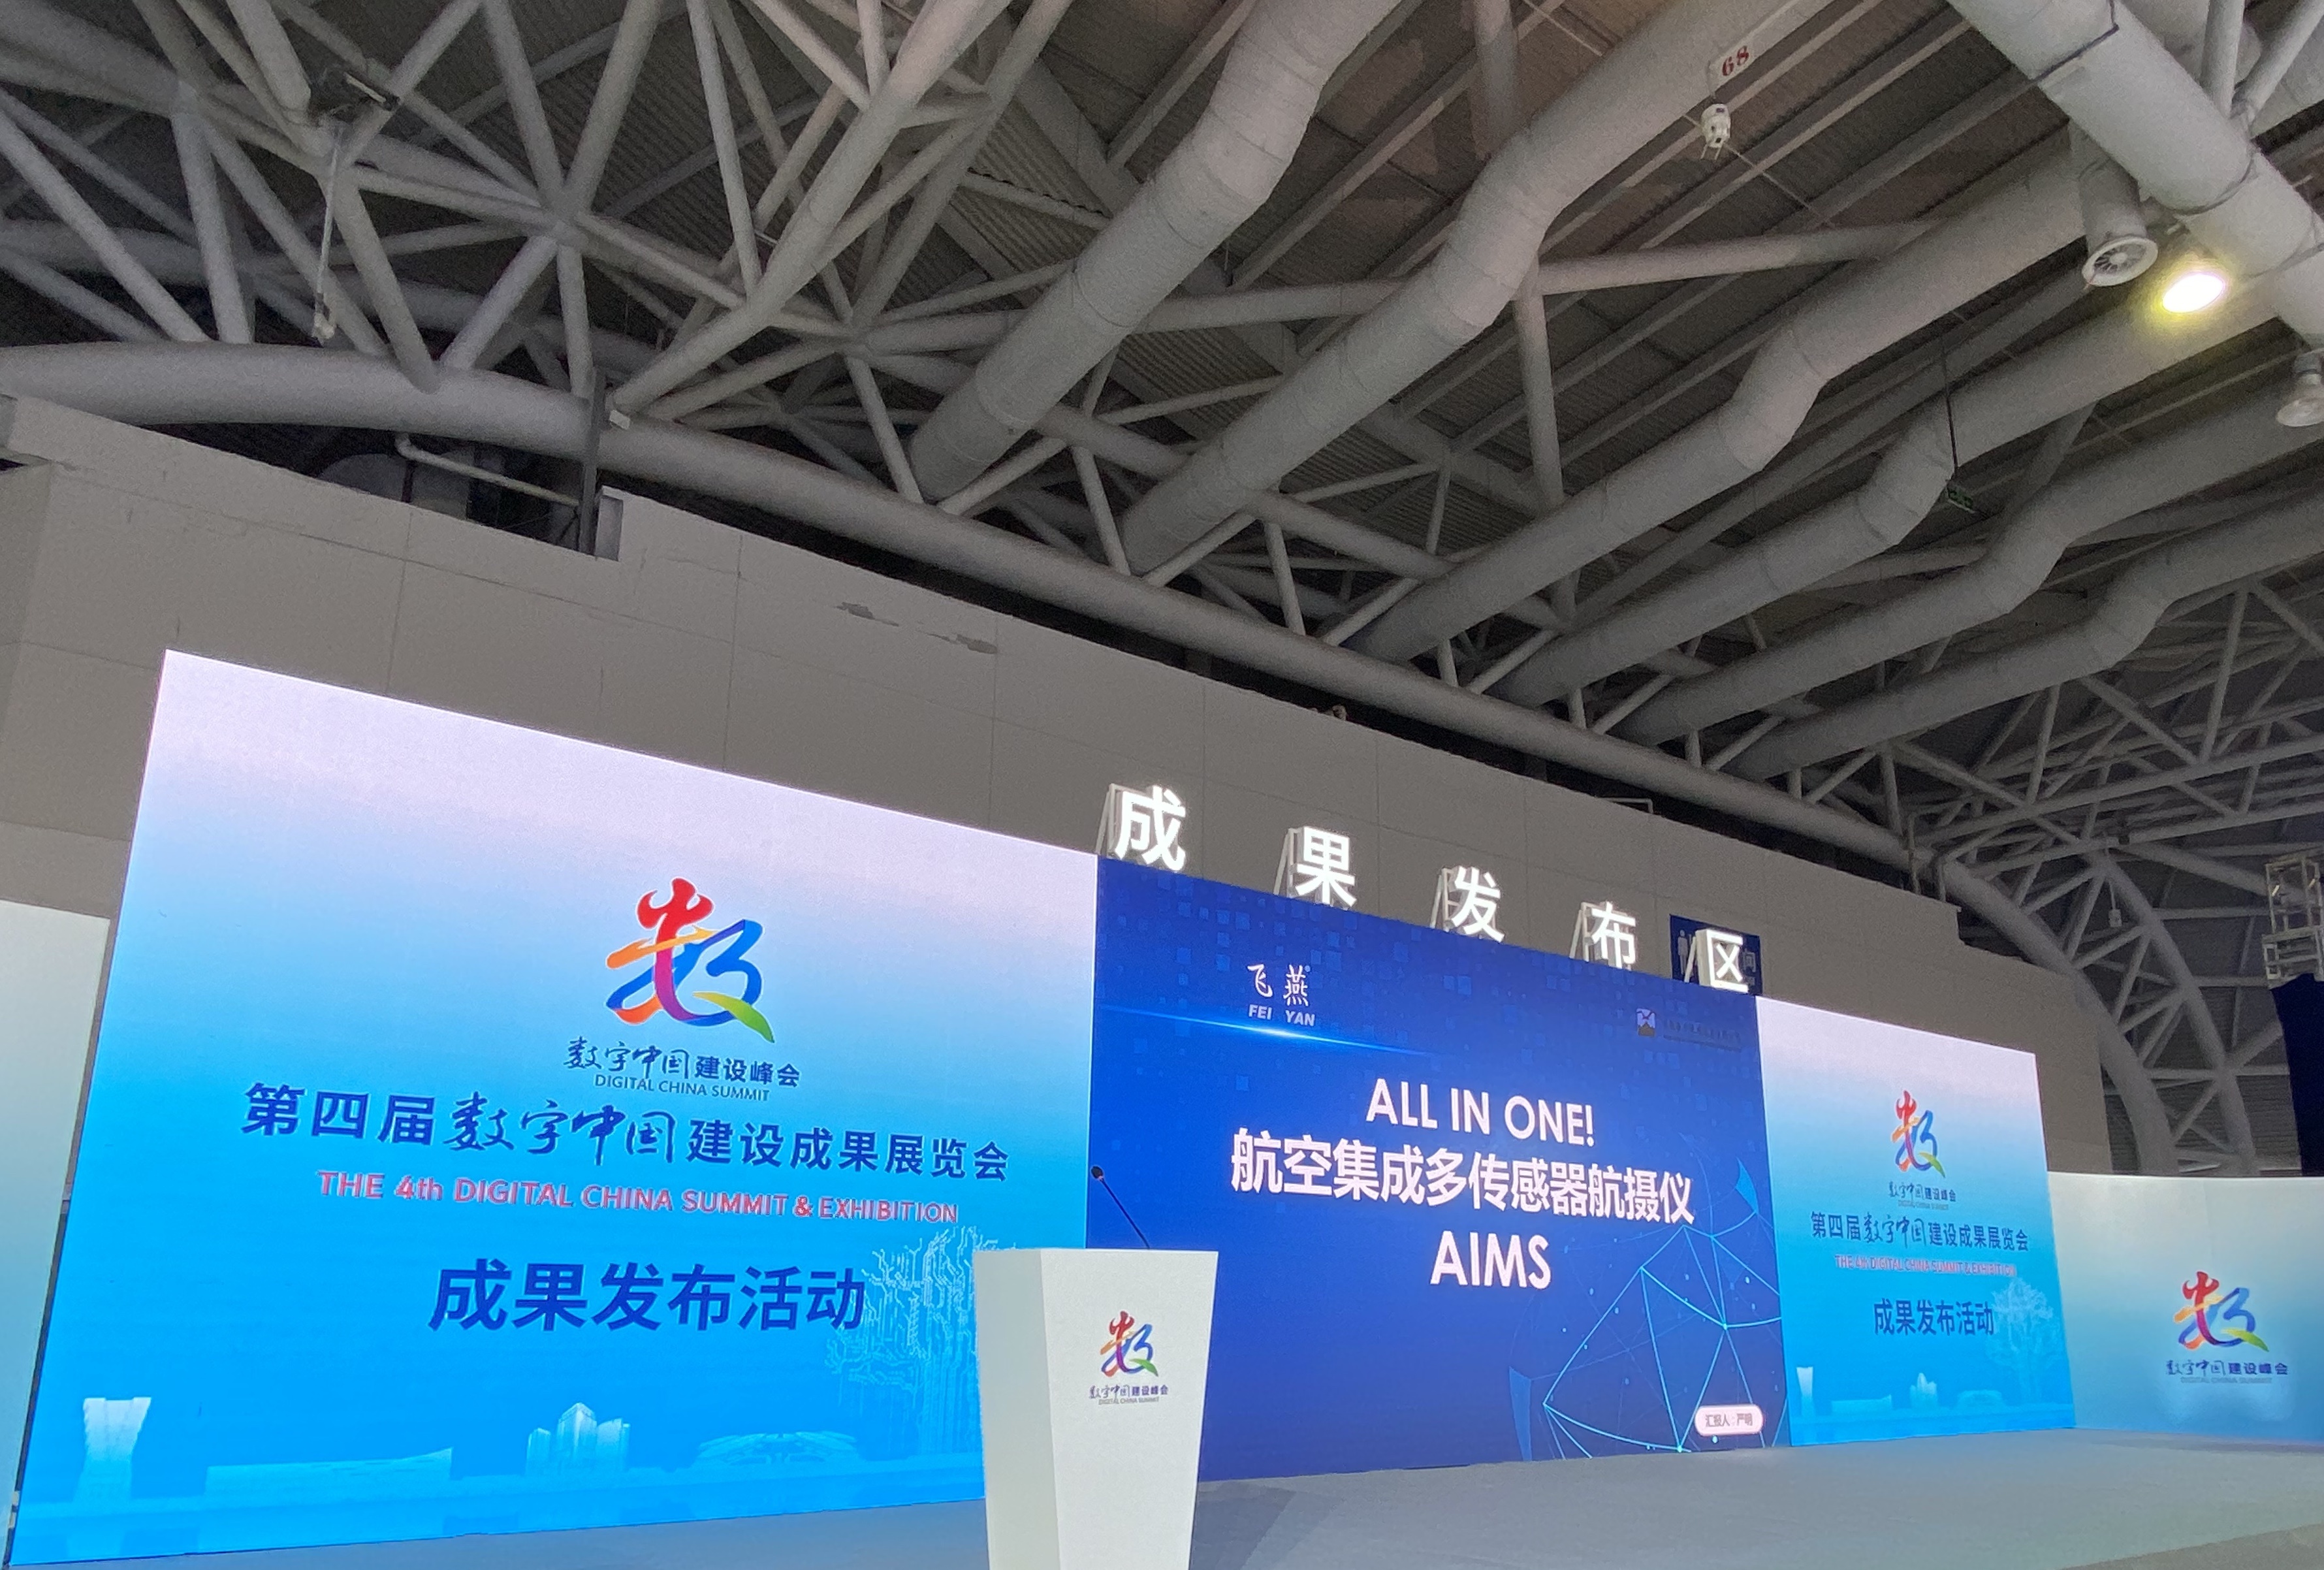 AIMS 航空集成多传感器航摄仪在“数字中国”首次公开亮相